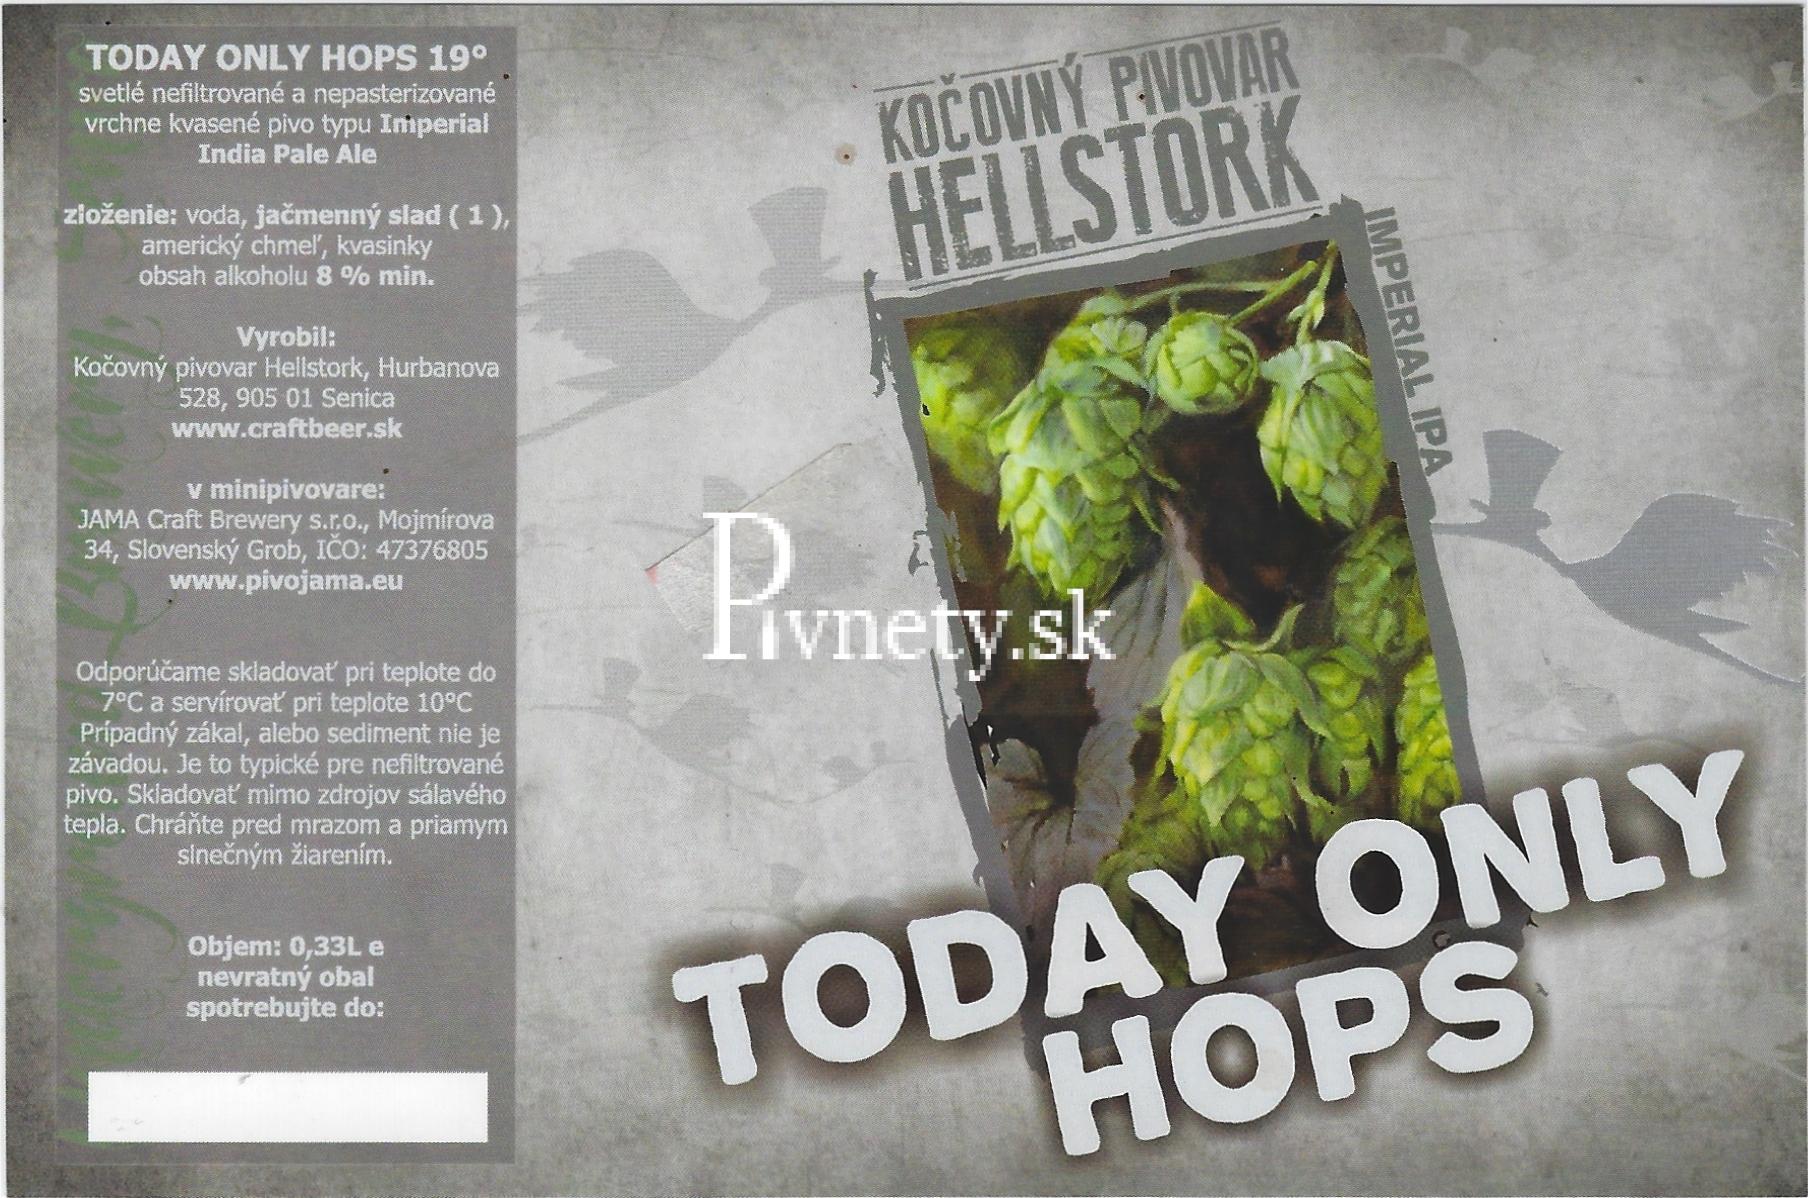 Kočovný pivovar Hellstork - Today Only Hops 19°